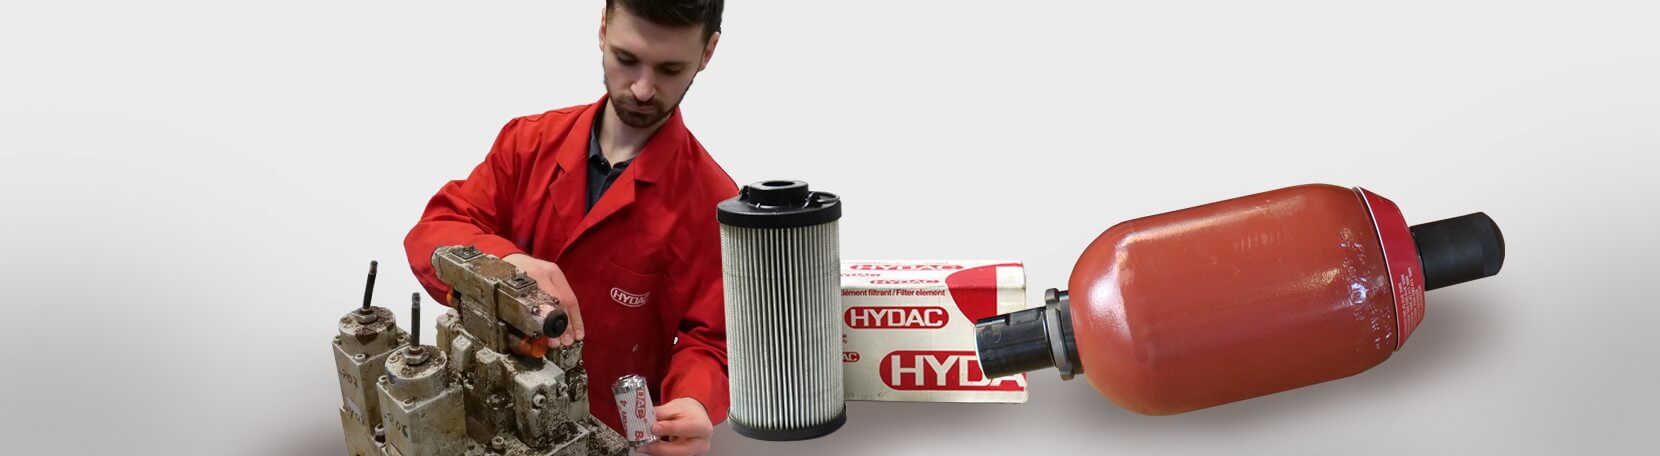 Hydac-Servicepartner für Filter, Speicher und mehr